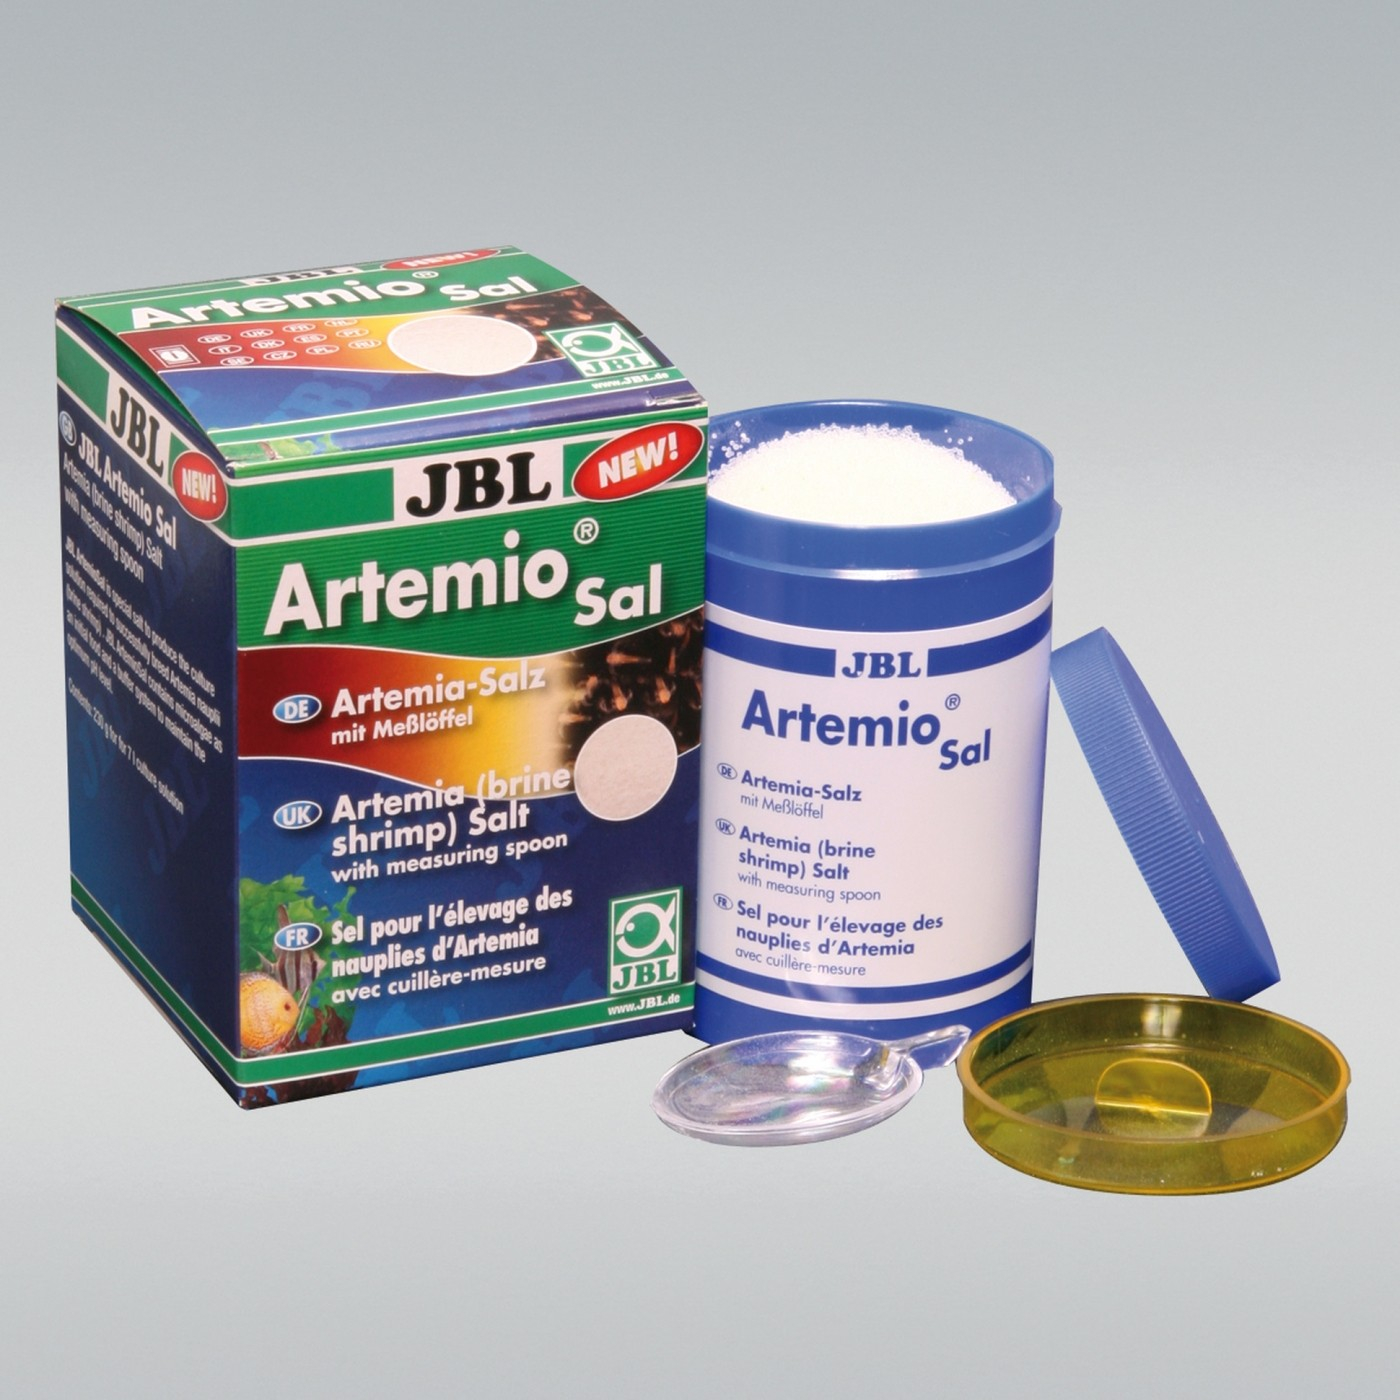 JBL ArtemioSal Sal especial para a cultura de artemia